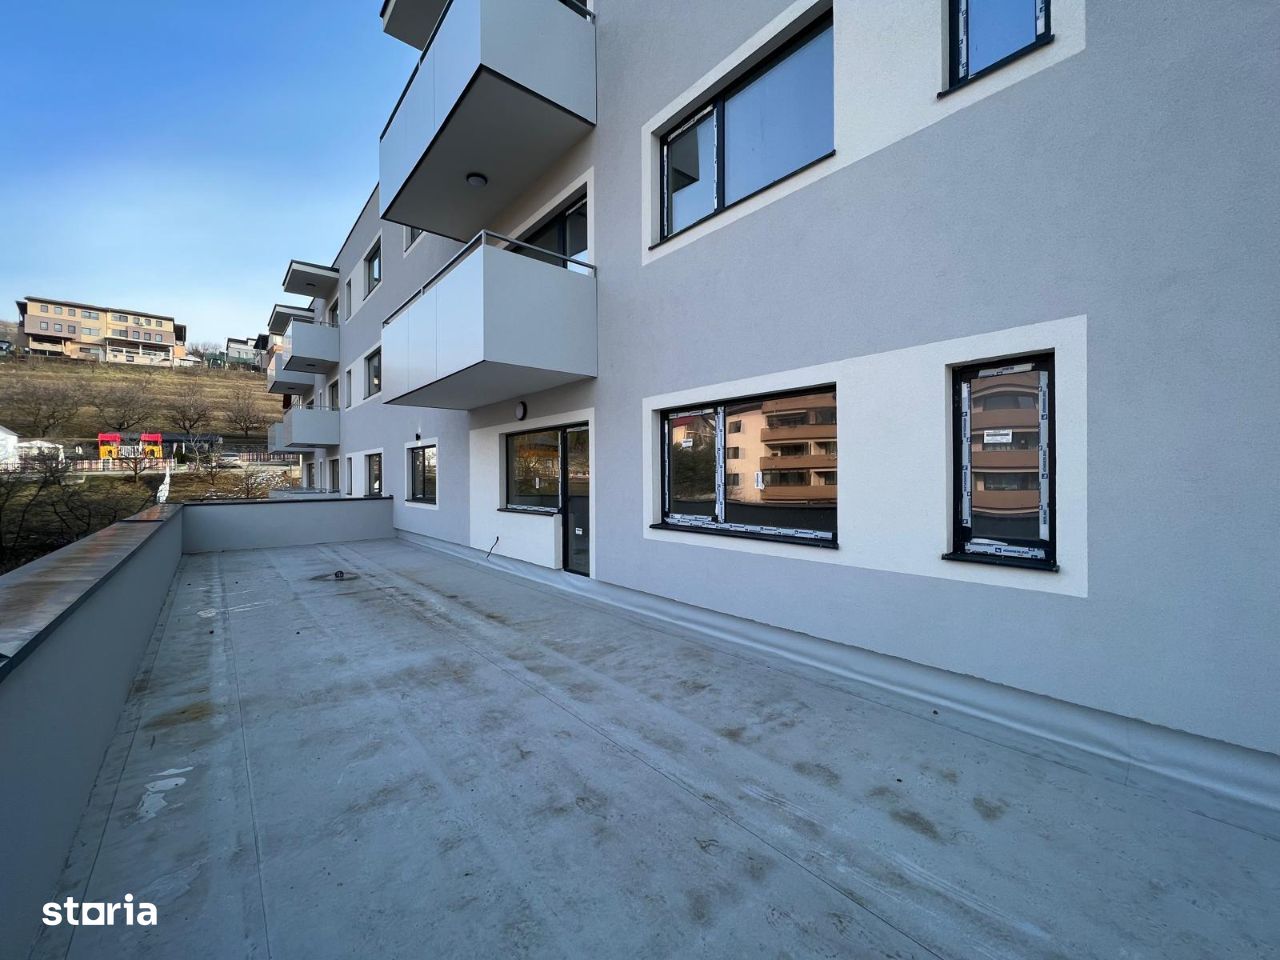 Apartament nou de vanzare, 52 mp+ terasă 54 mp, Baciu, 89000 Eur